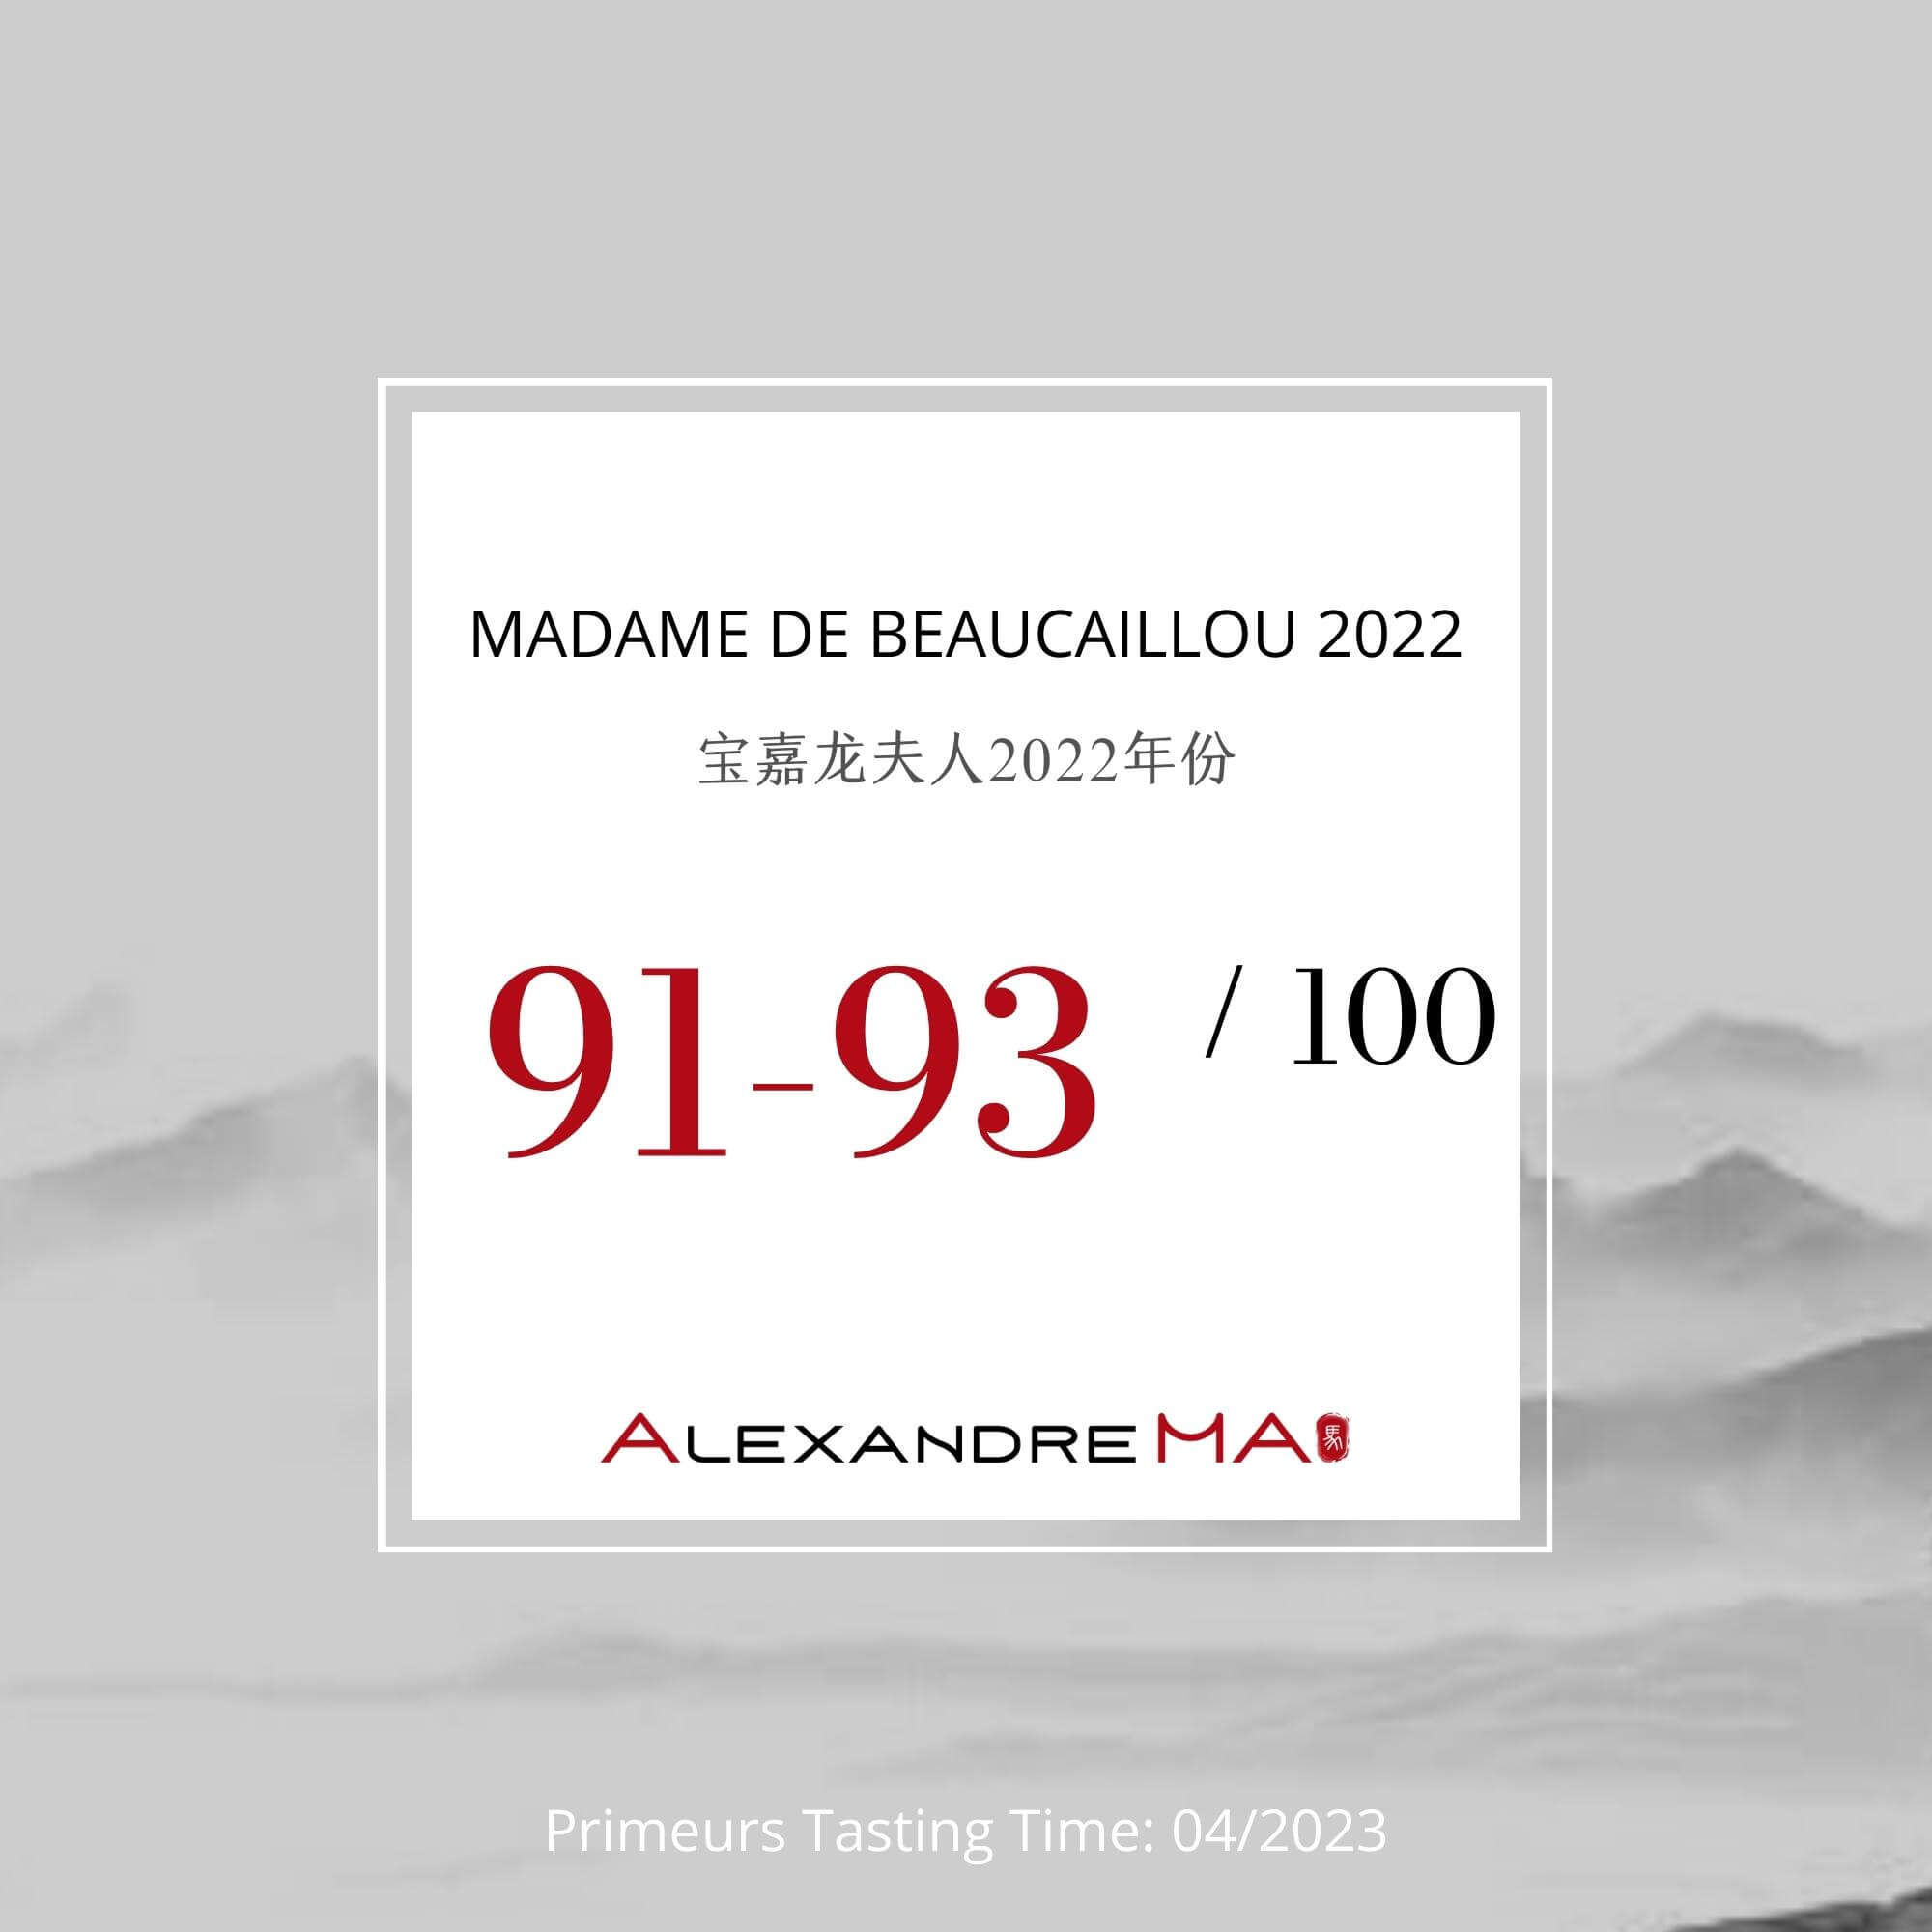 Madame de Beaucaillou 2022 Primeurs 宝嘉龙夫人 - Alexandre Ma